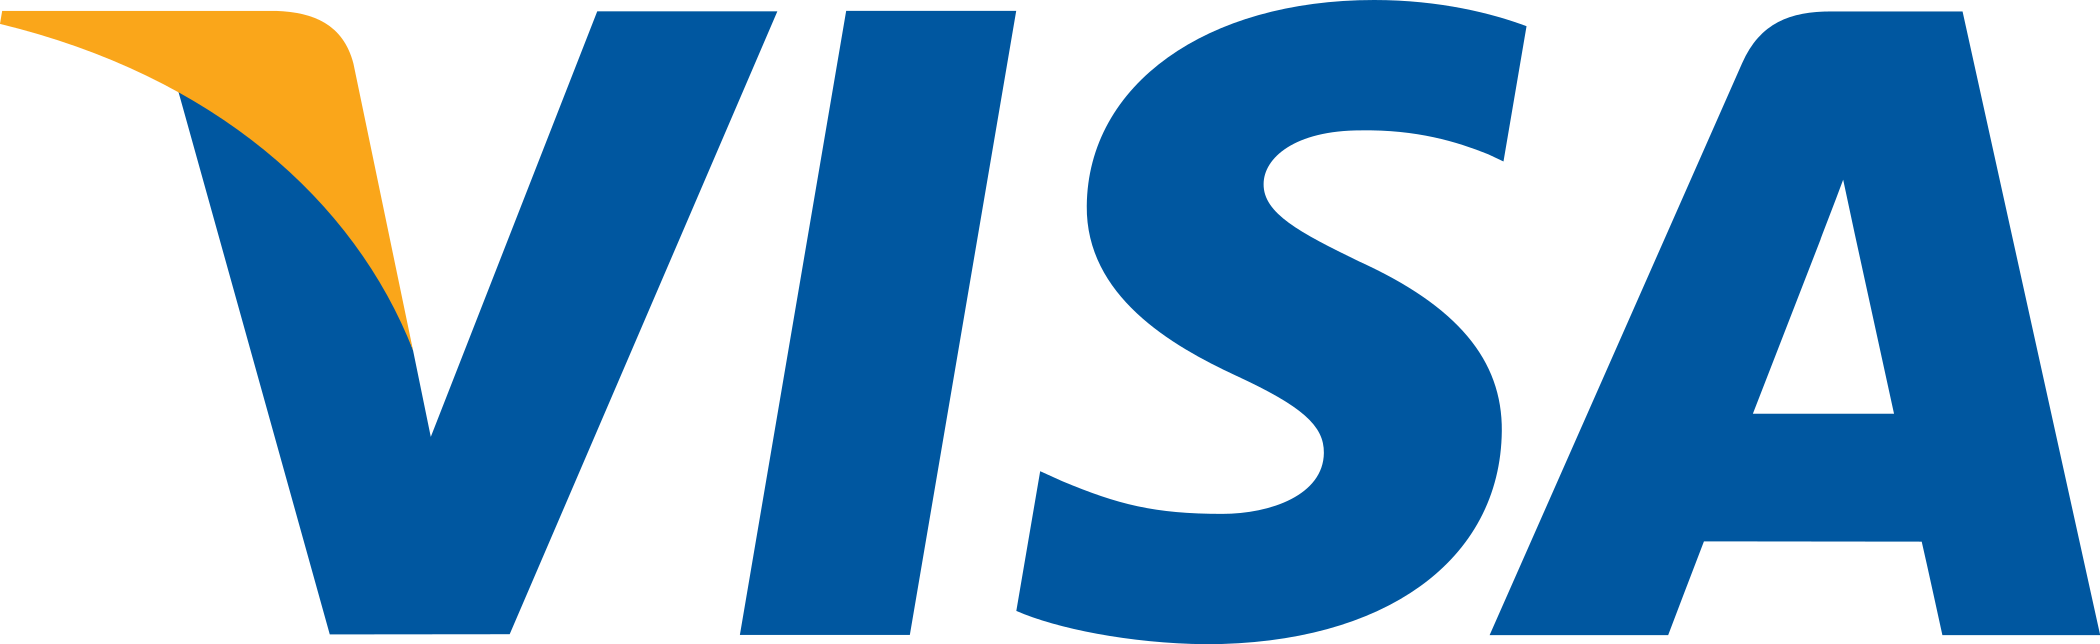 visa logo 7